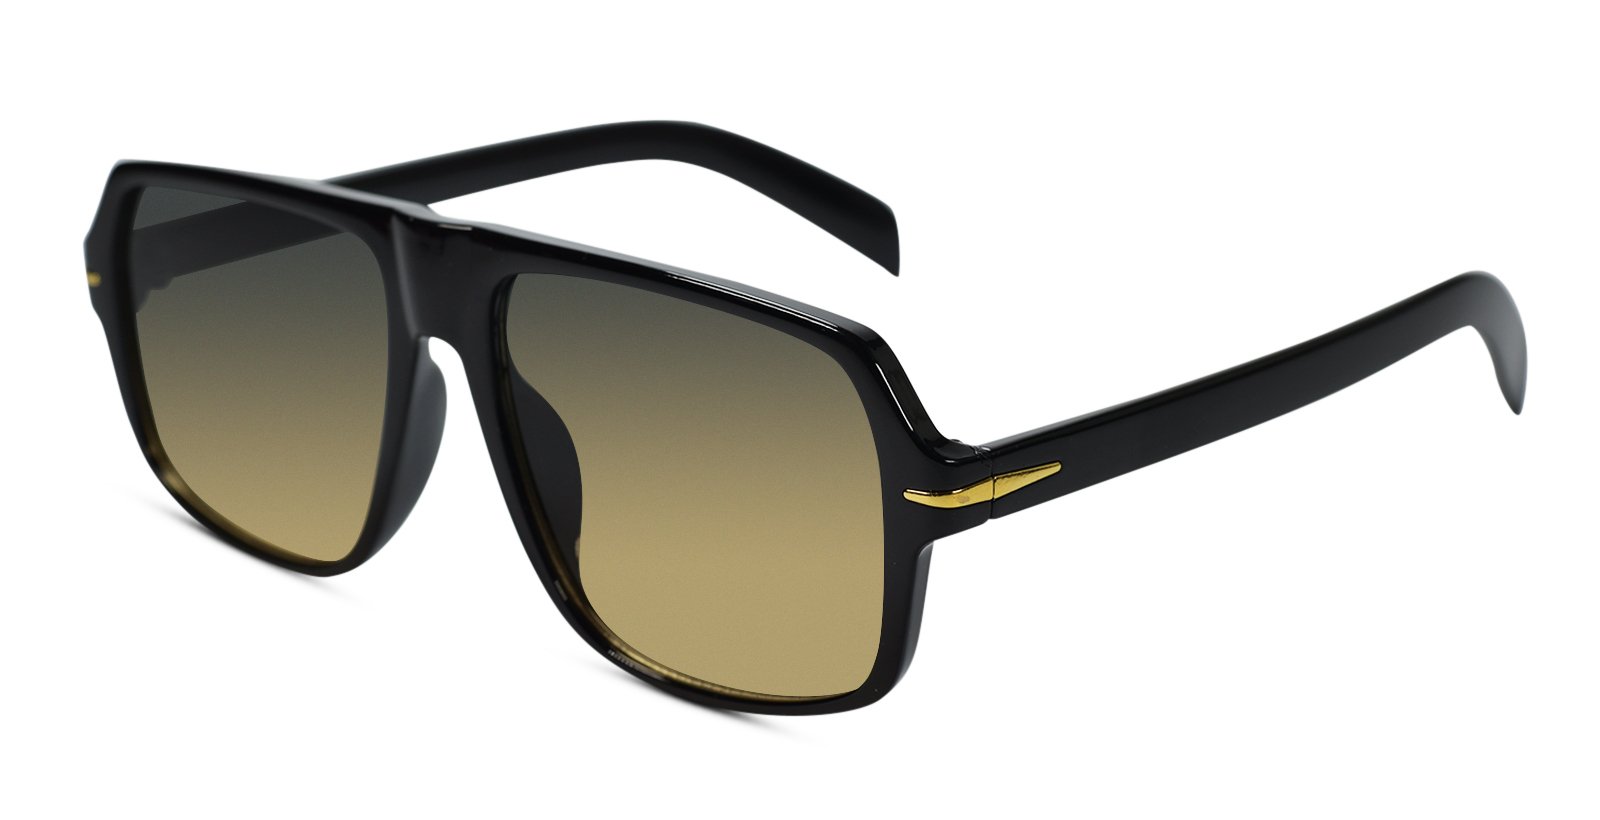 Stylish Rectangular Black Sunglasses for Men